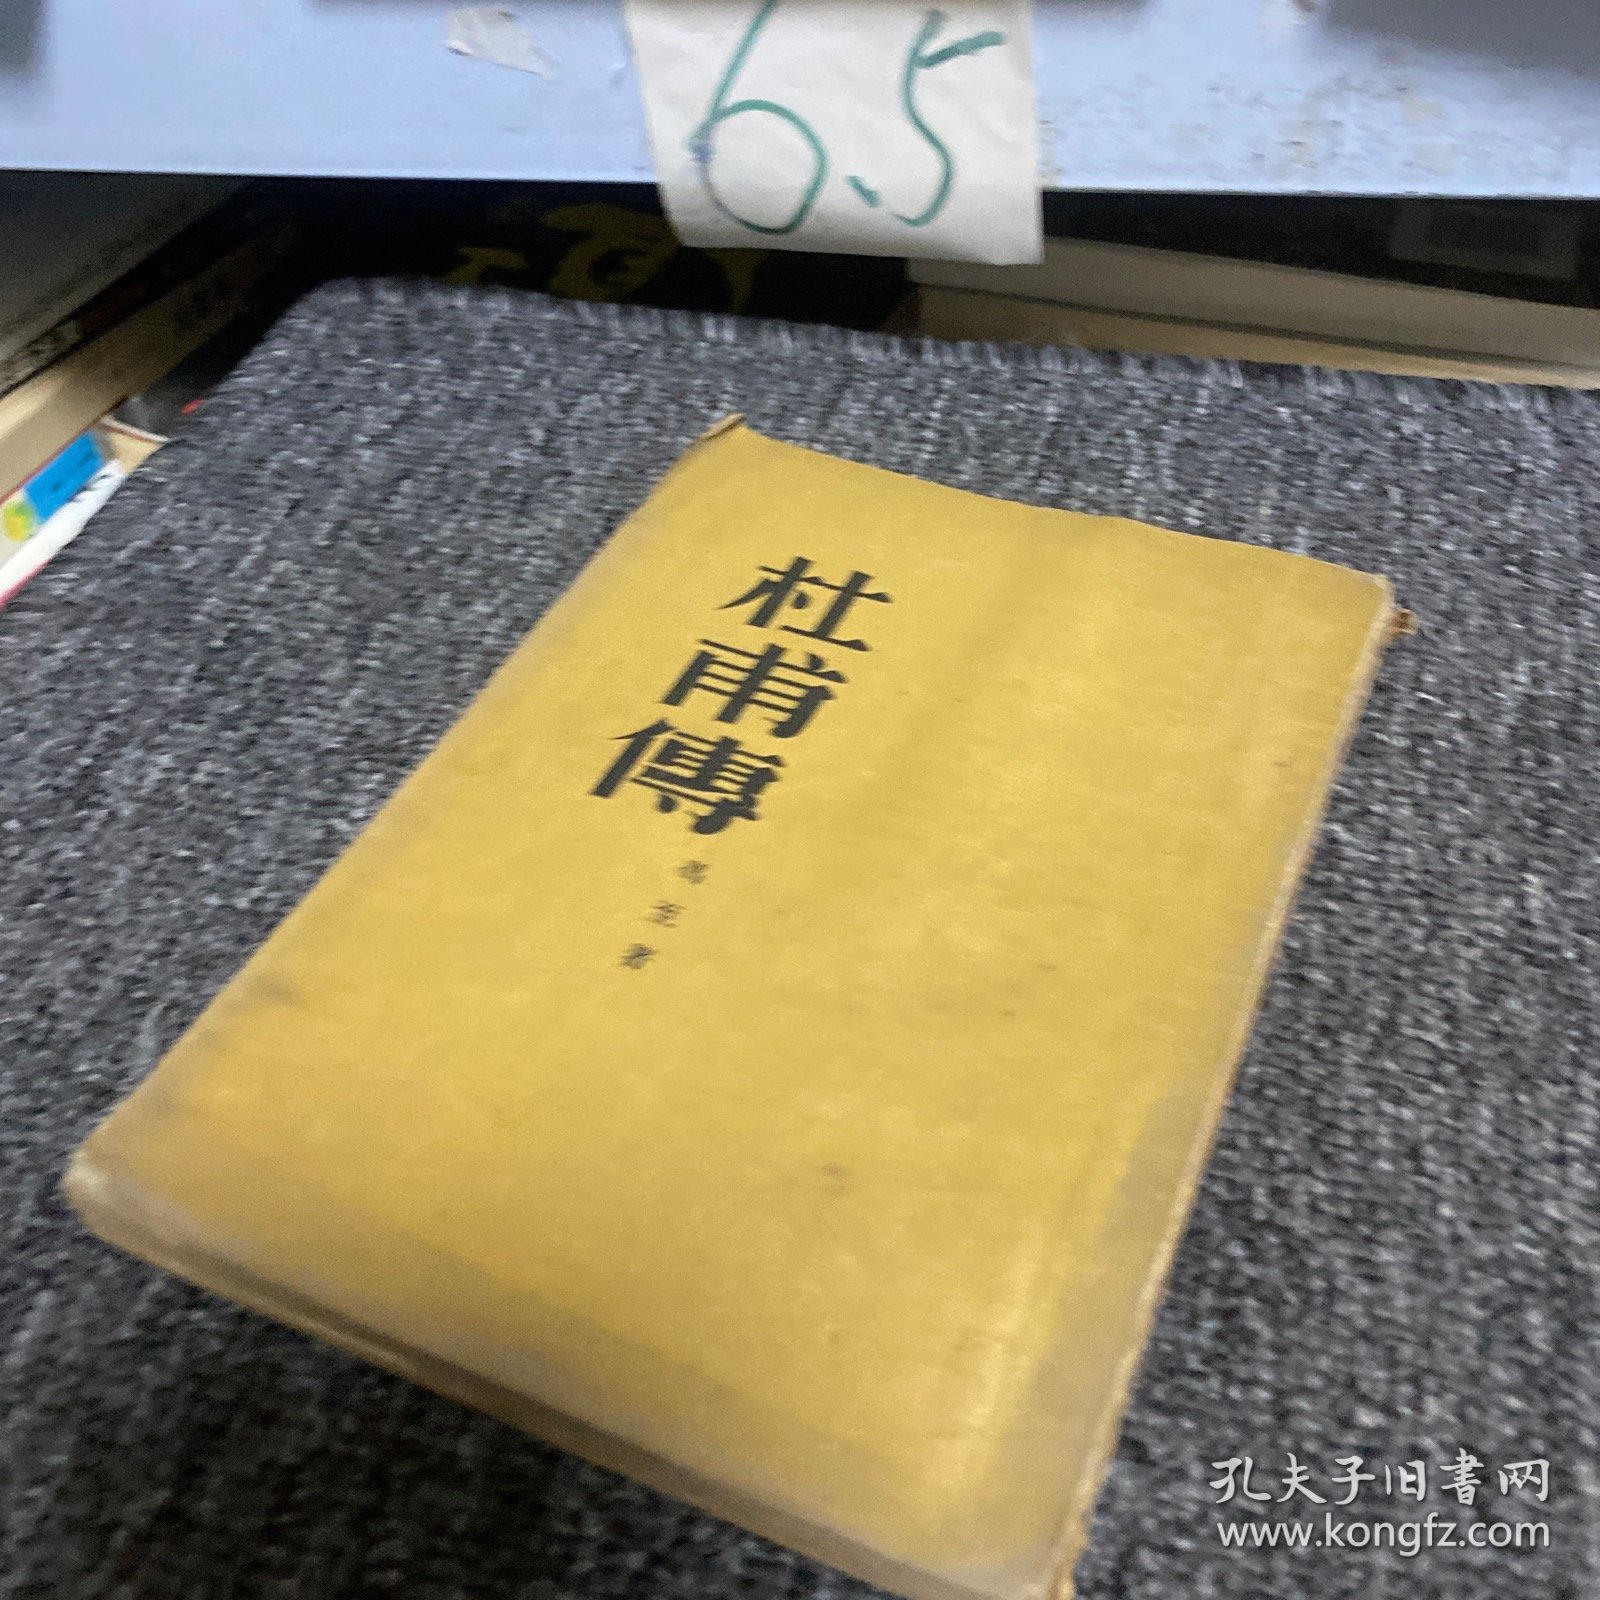 《杜甫传》竖版繁体 1952年初版 作者冯至 人民文学出版社